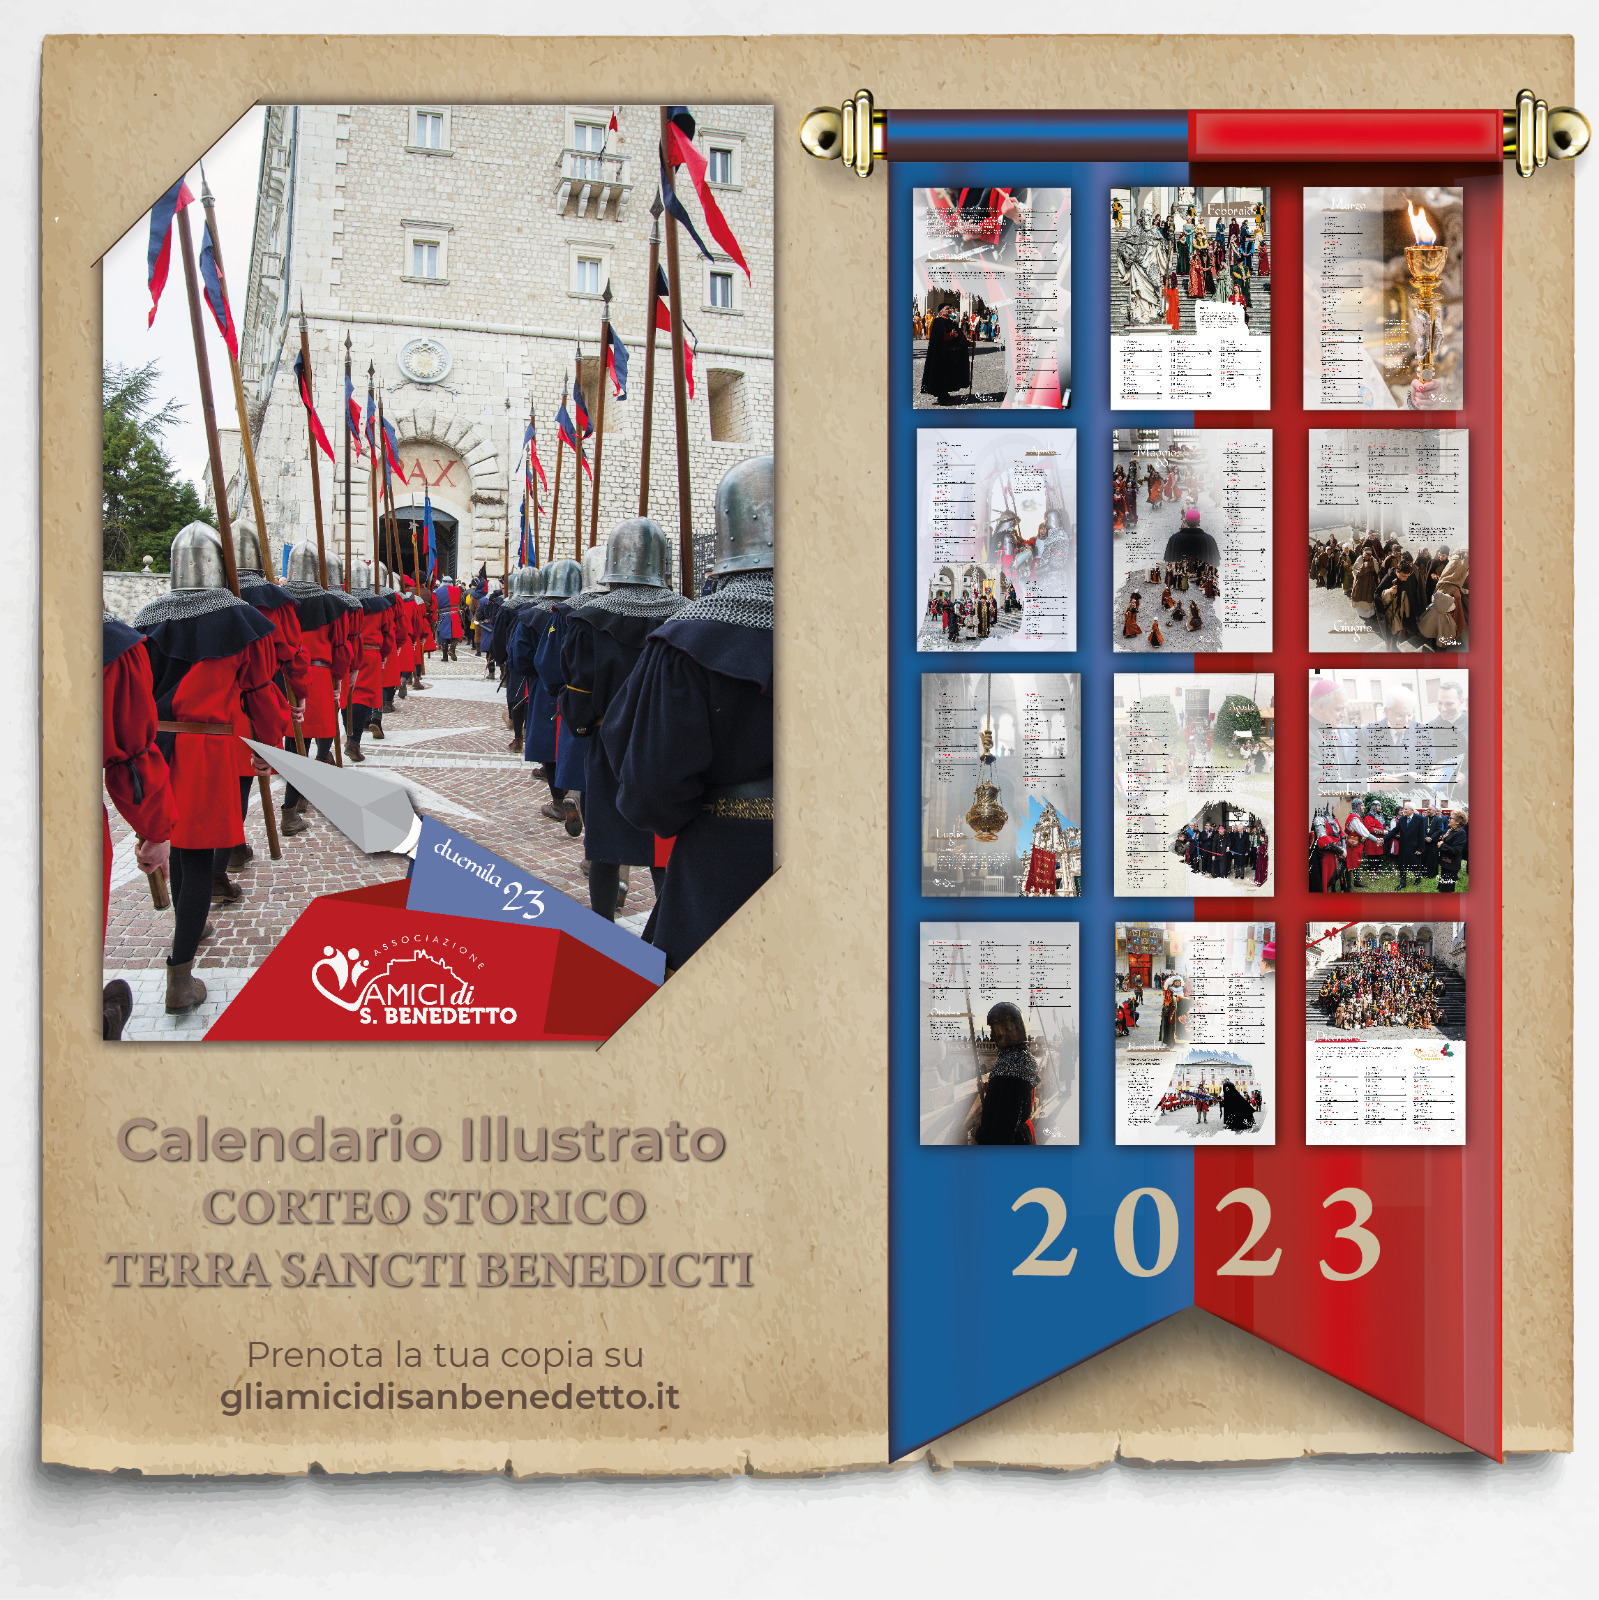 Il Calendario 2023 con il Corteo Storico Terra Sancti Benedicti